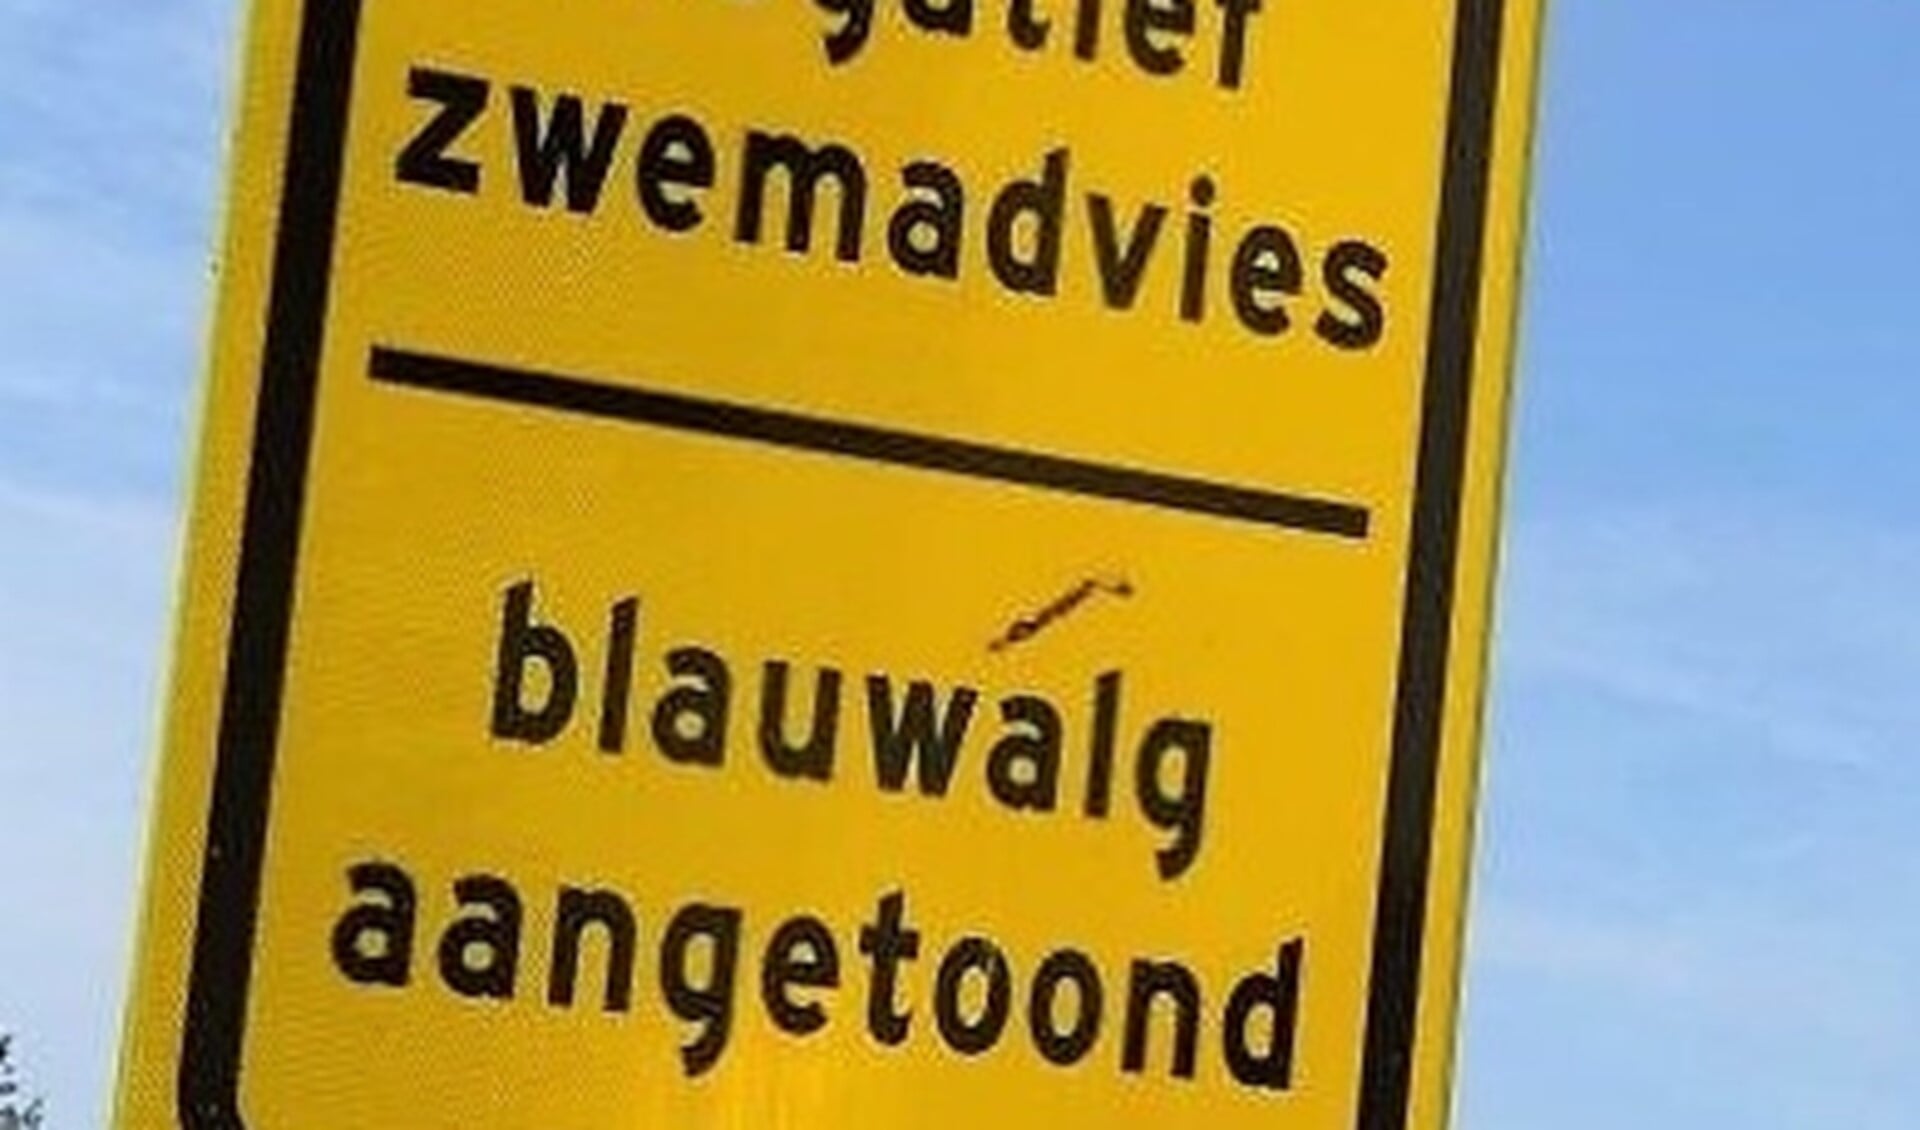 Vandaag werd bekend dat er een negatief zwemadvies geldt voor de zwemlocatie Vlietland Badstrand Noordoostoever (archieffoto Ap de Heus).